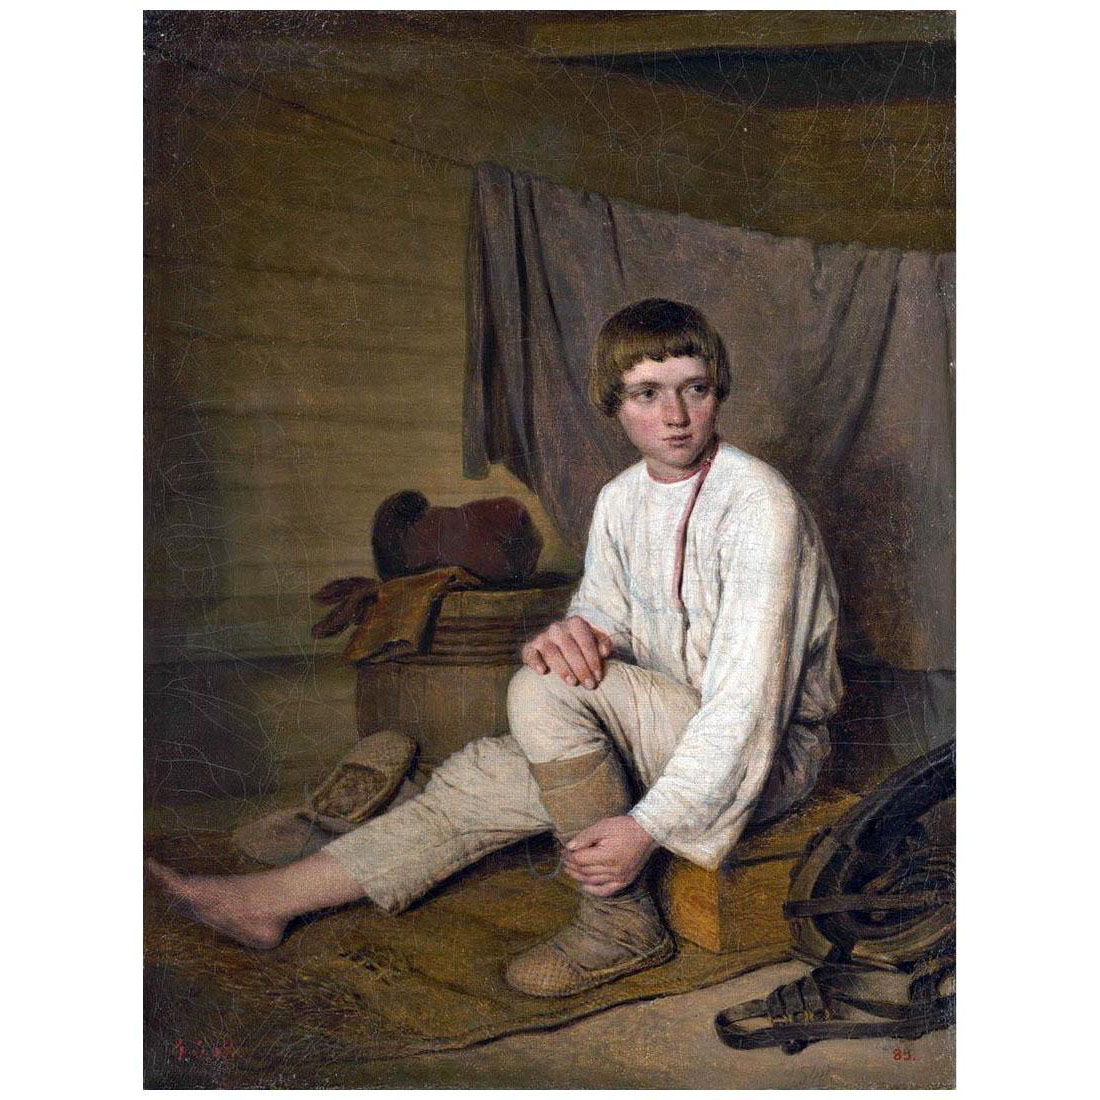 Алексей Венецианов. Крестьянский мальчик, надевающий лапти. 1823-1826. Русский музей